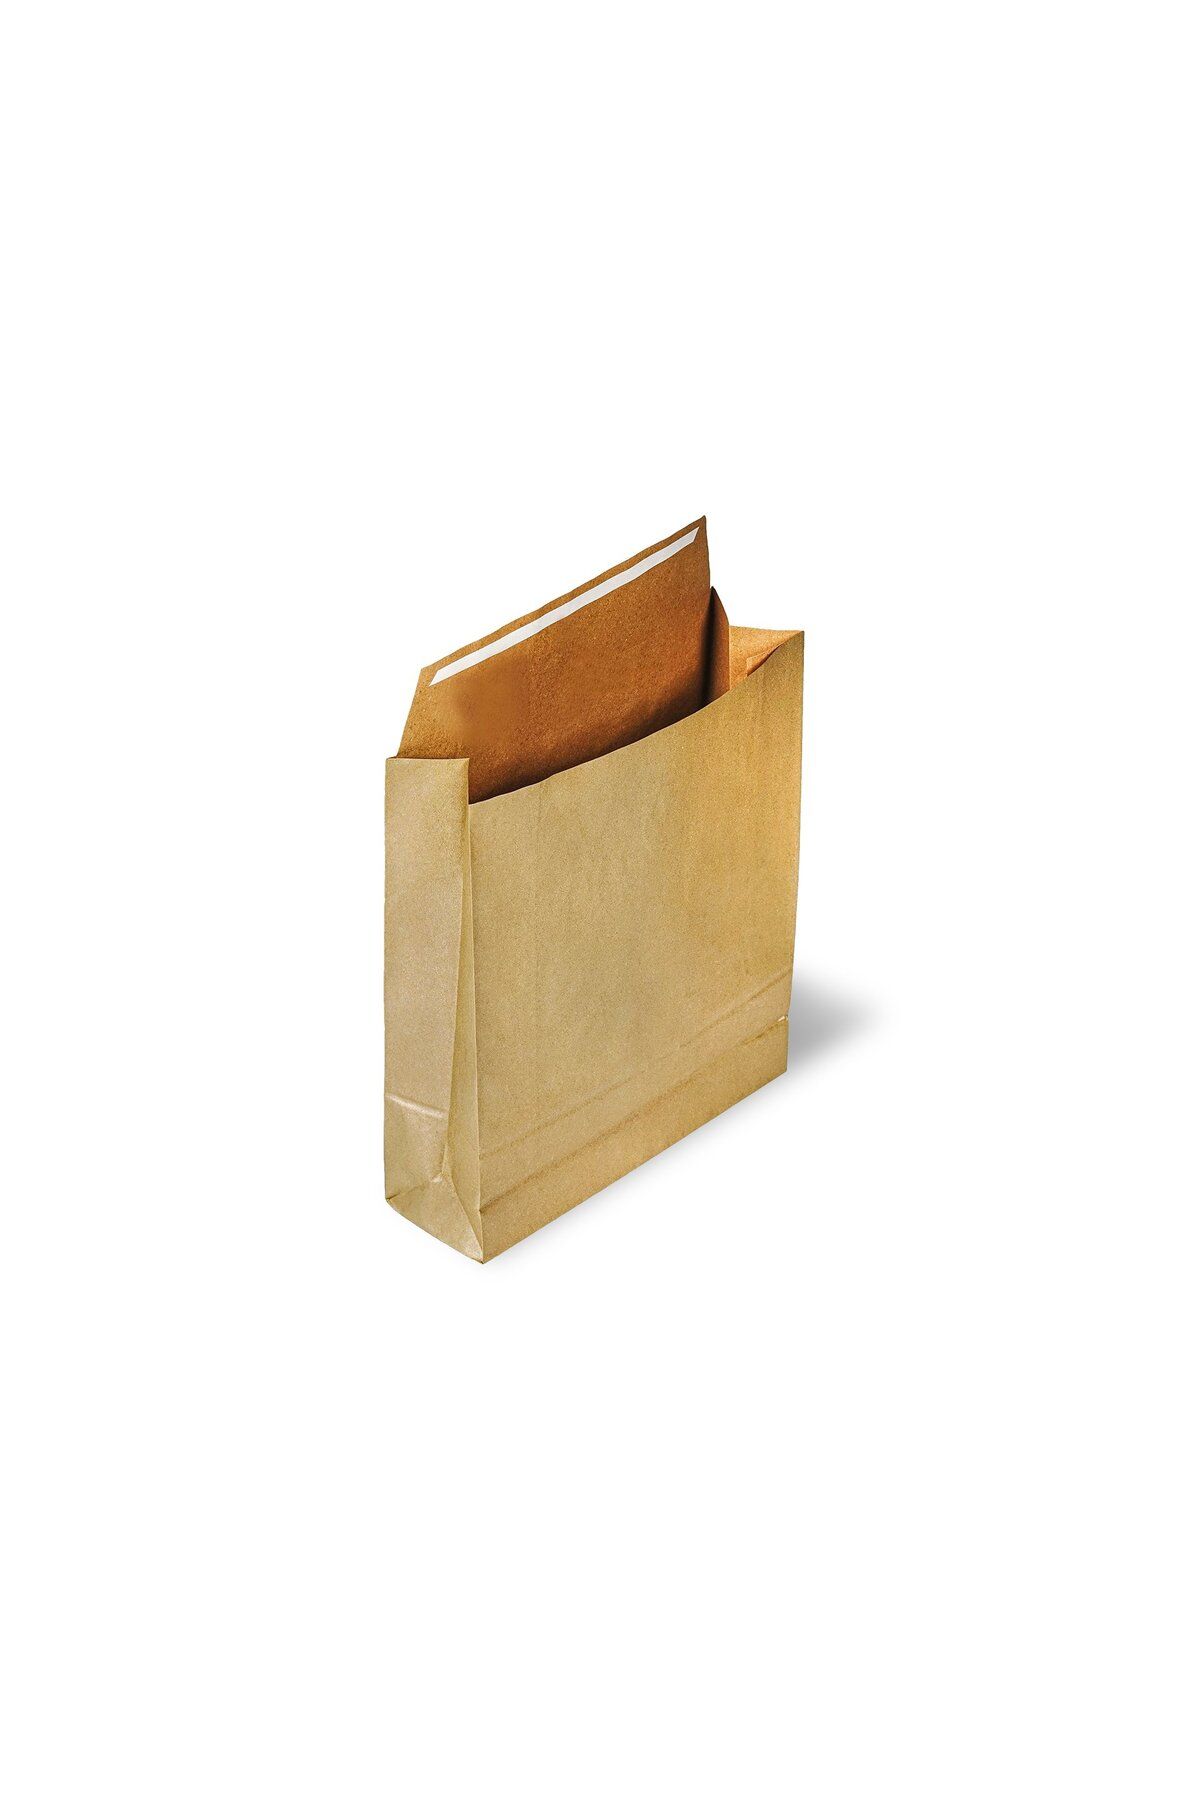 roco paper Hediye Paketi 15*6*25,5 cm Kese Kağıdı Yapışkanlı Ağız Altın 25'li Paket